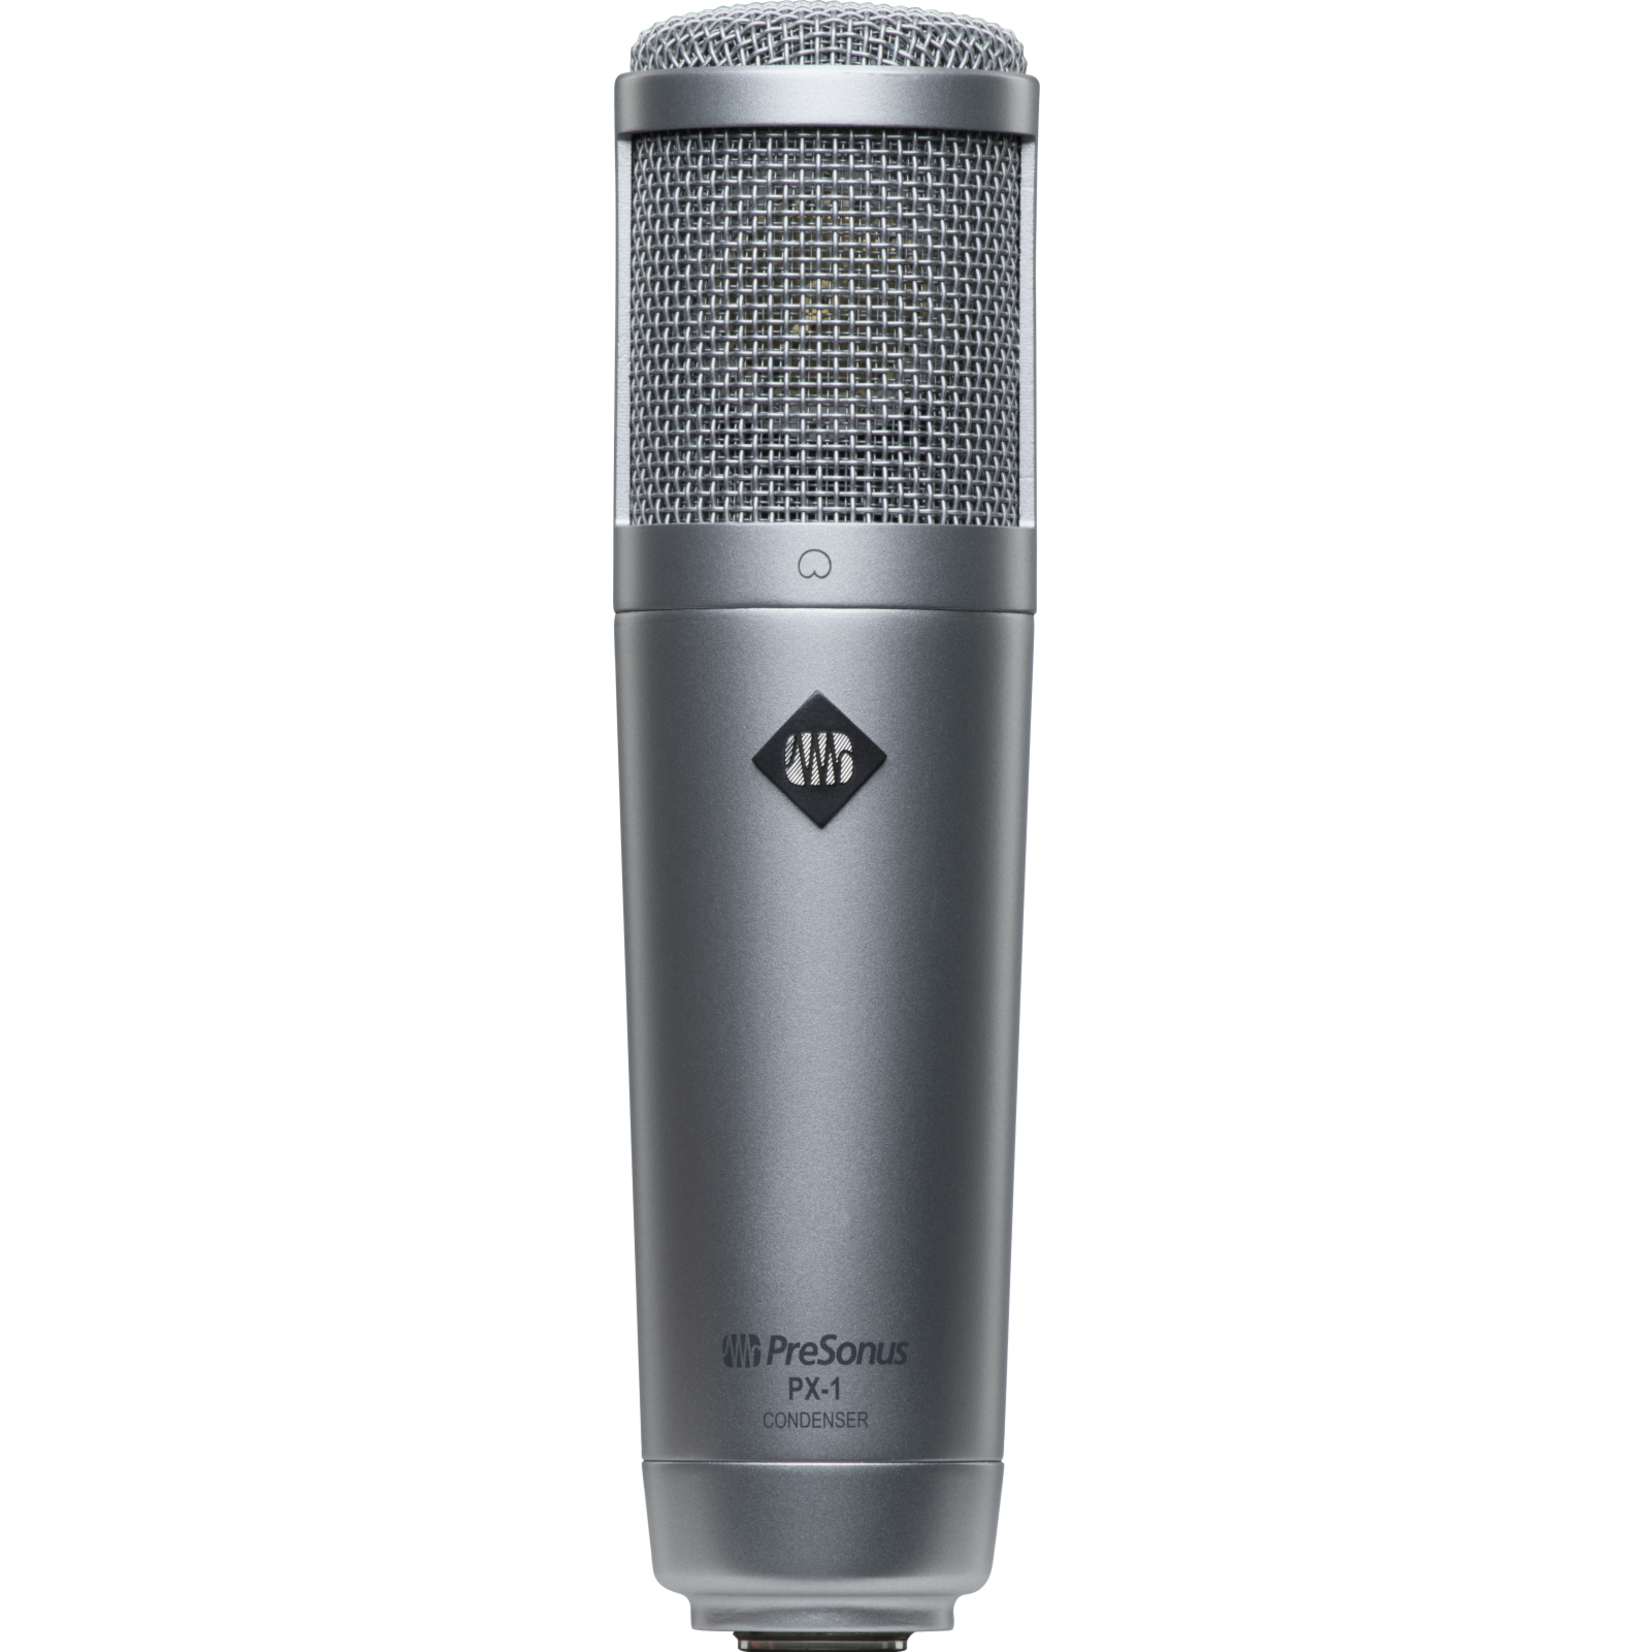 PreSonus PX-1 Large Diaphragm Cardioid Condenser Microphone - Black